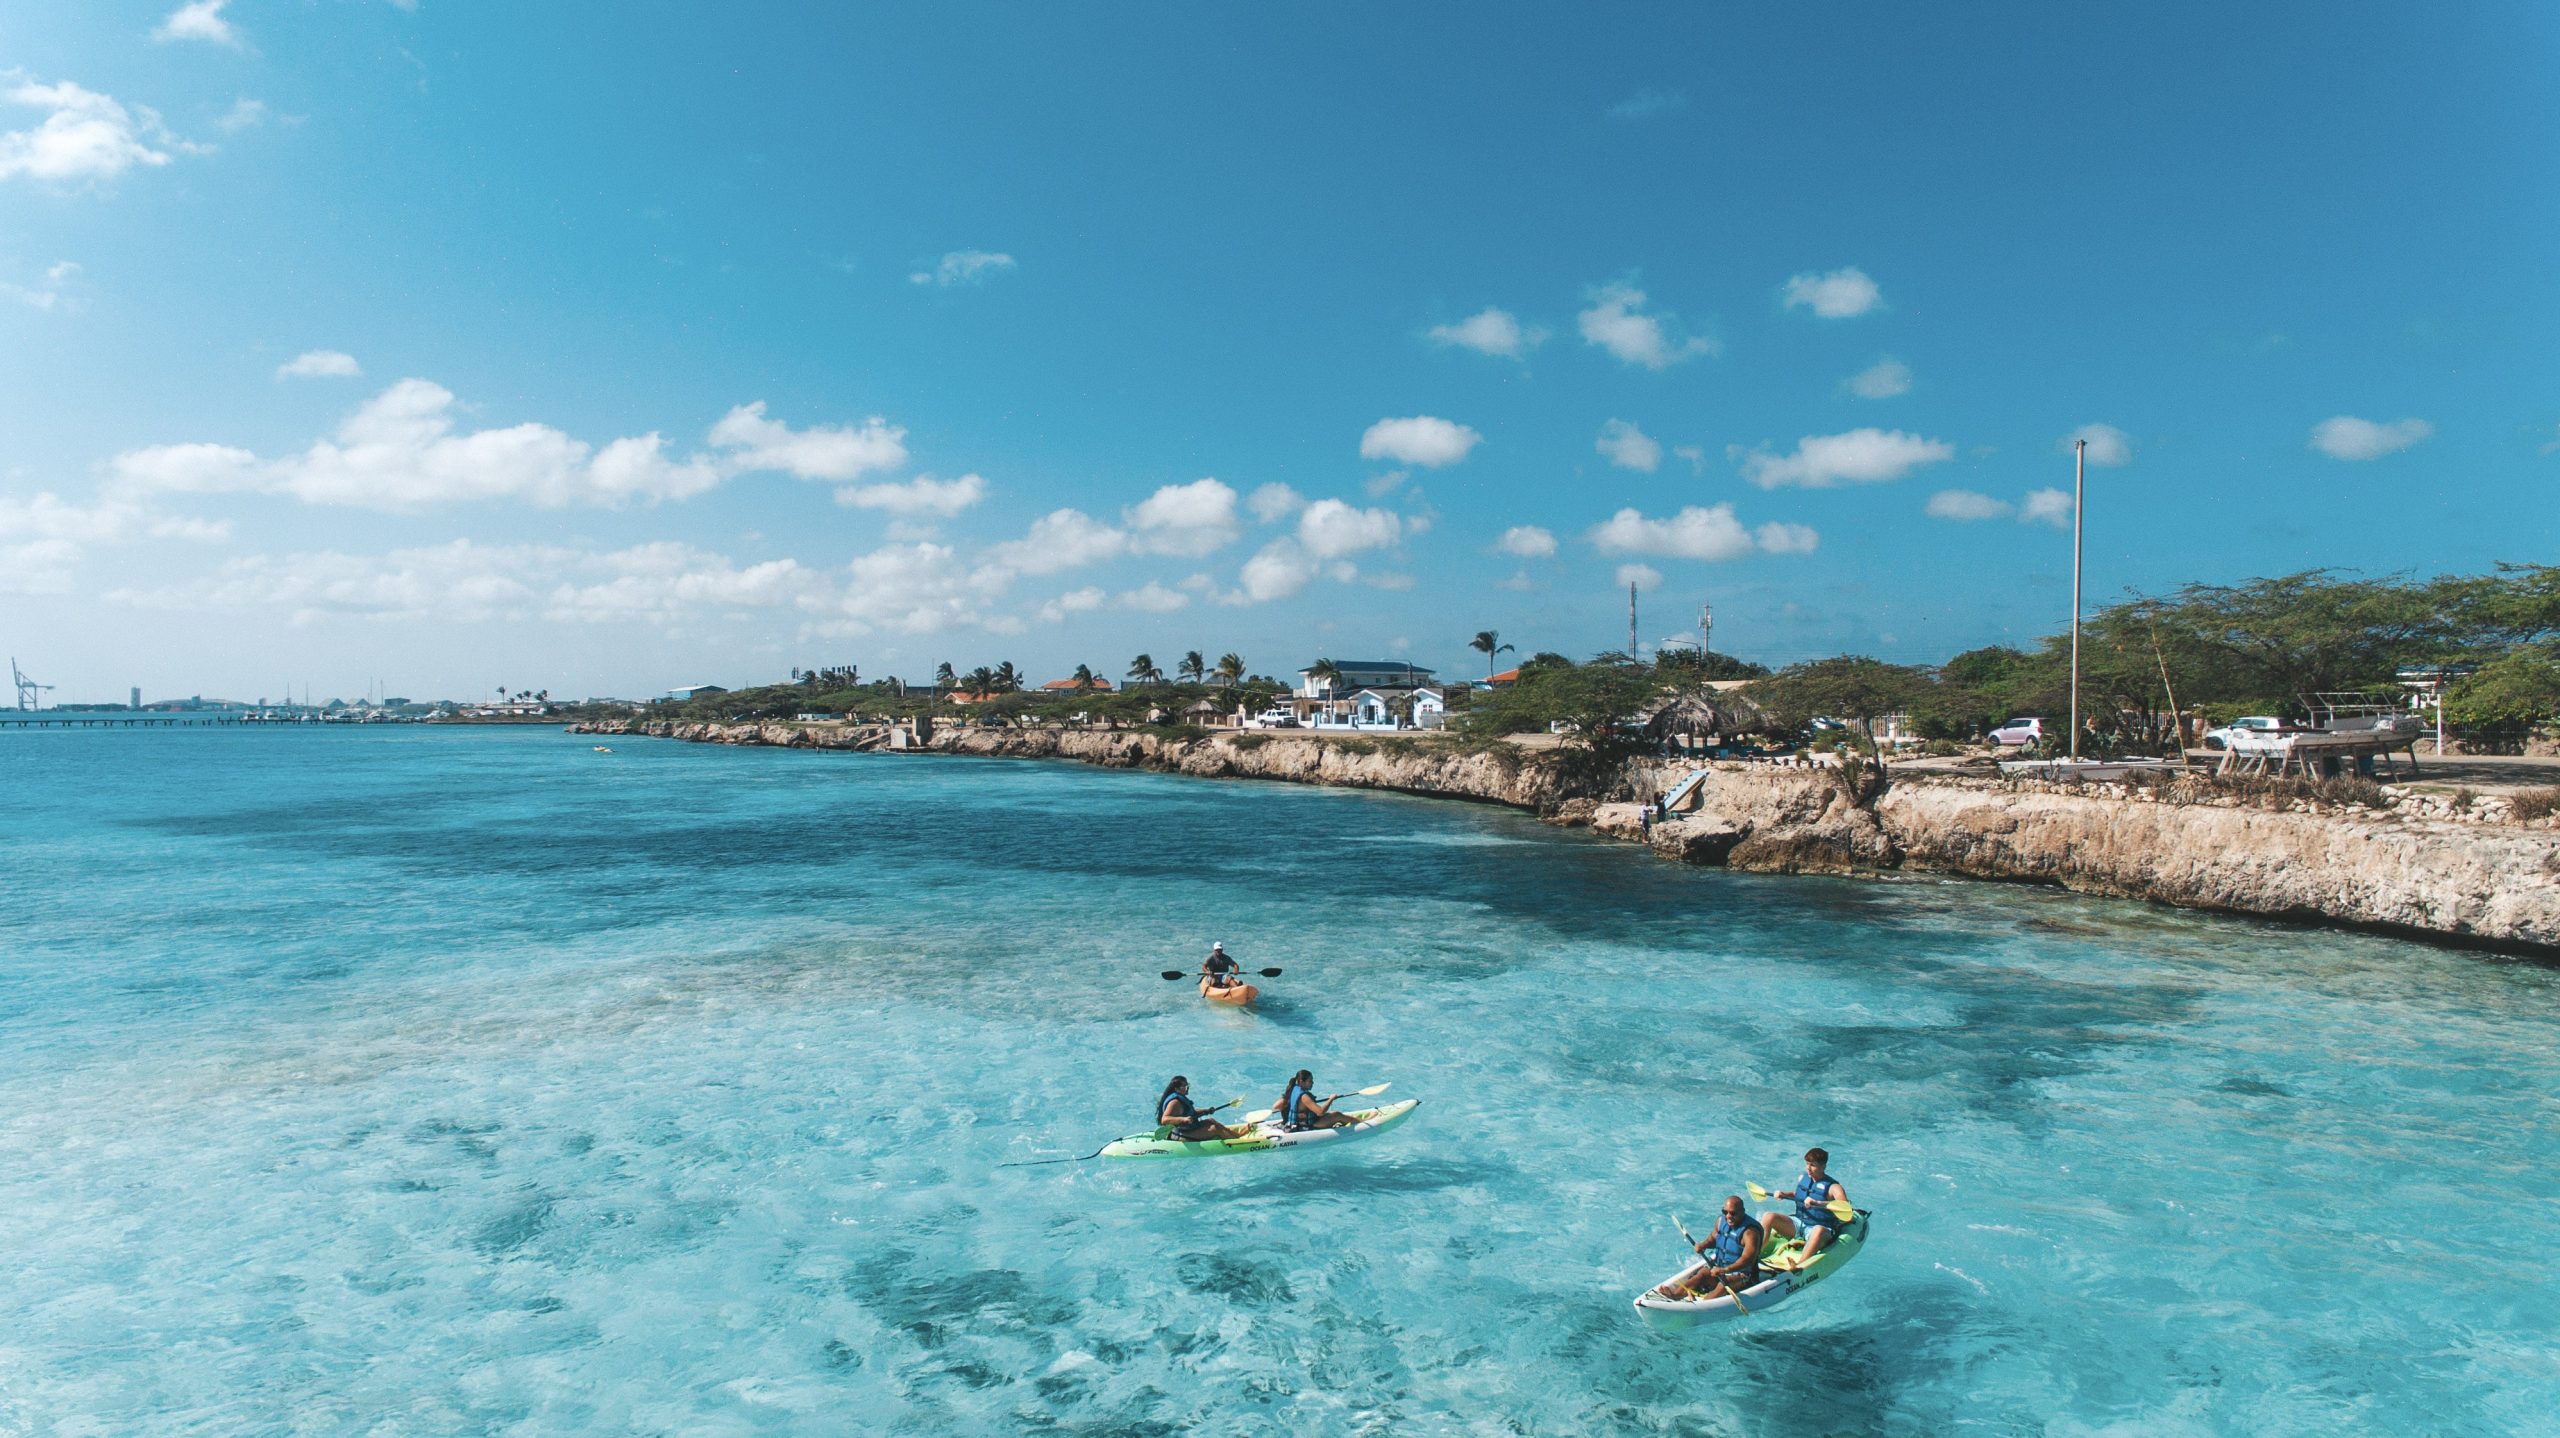 Aruba le pone color a la Isla en las fiestas navideñas con todos los protocolos de bioseguridad